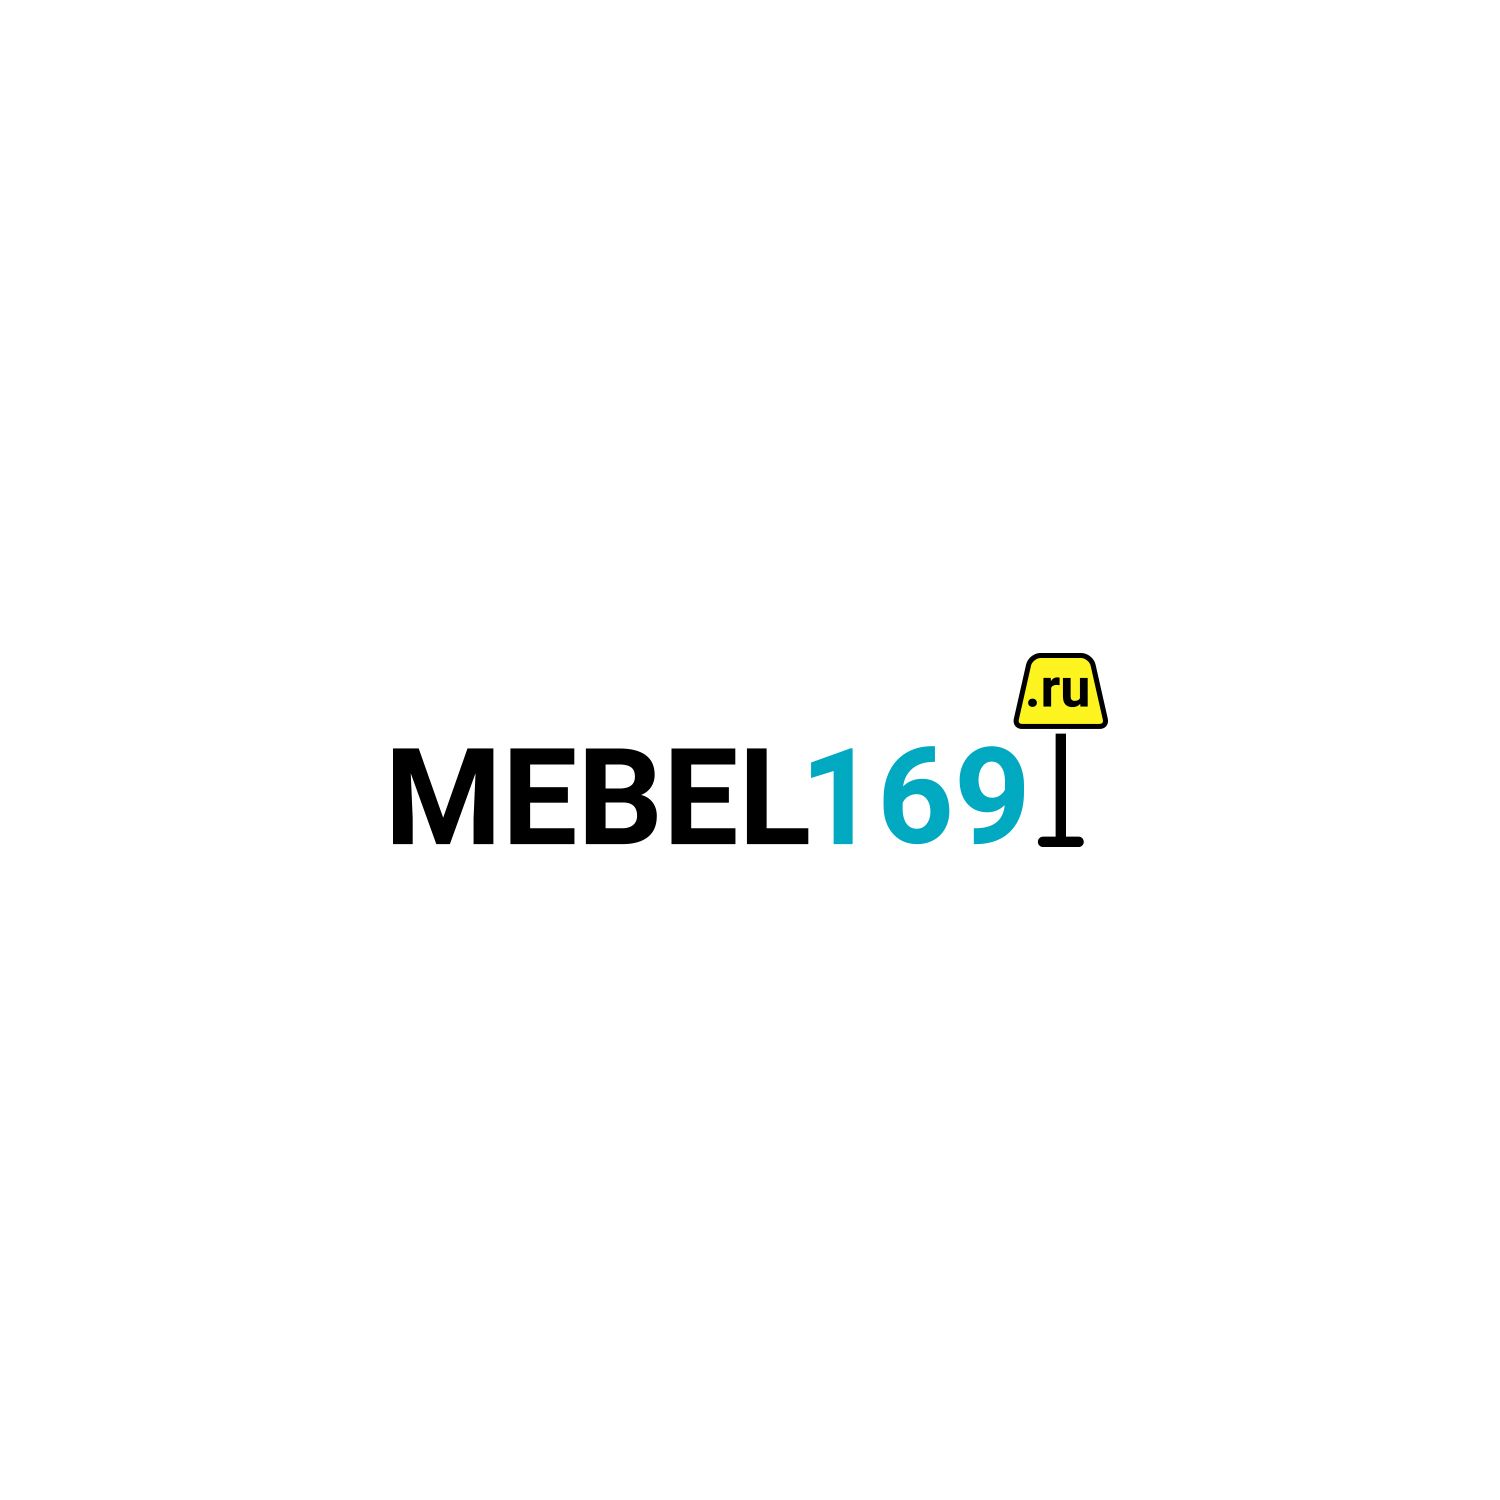 Логотип для Mebel169.ru - дизайнер KIRILLRET